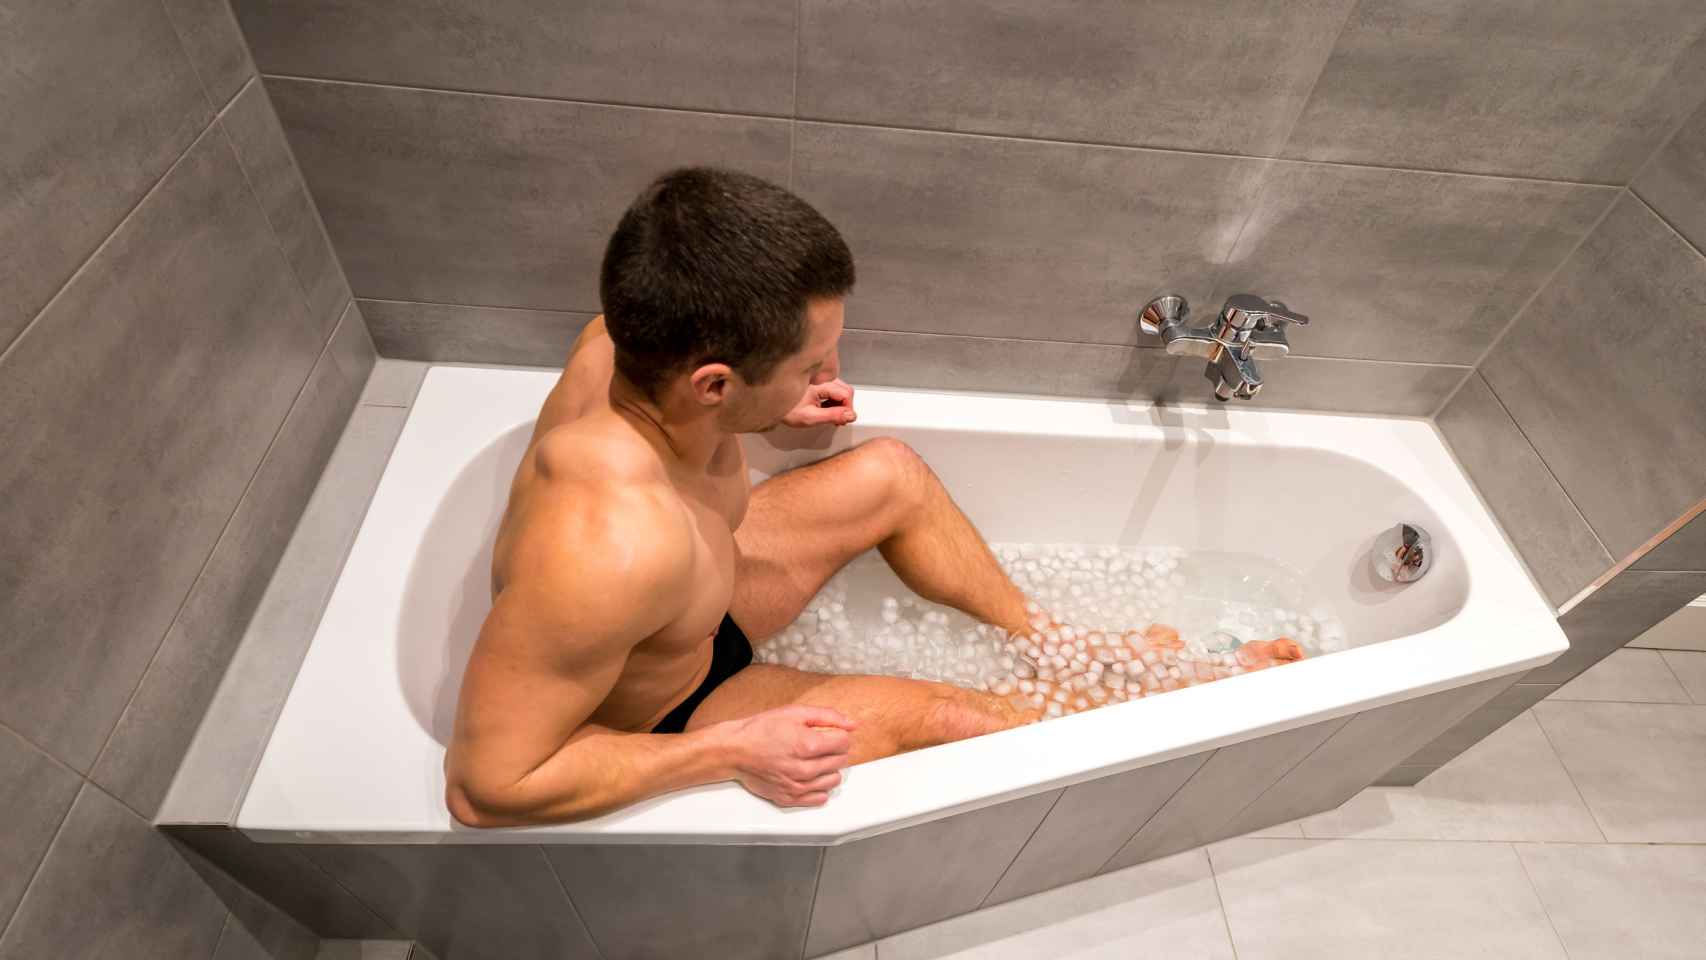 Son beneficiosos los baños con hielo para reducir el dolor muscular?